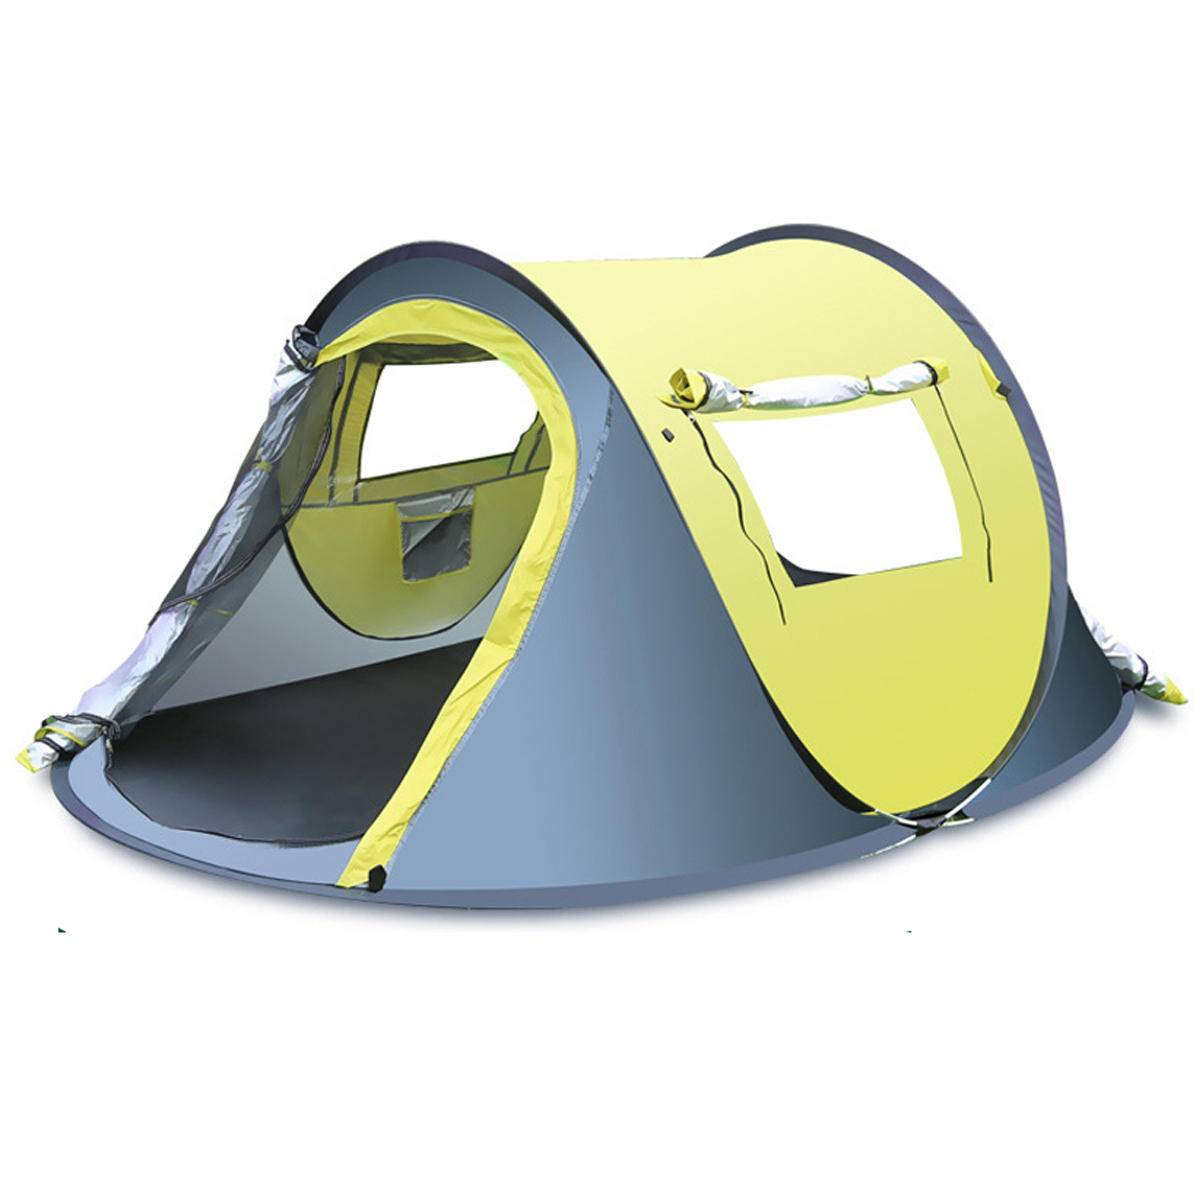 Tenda automatica da campeggio per 3-4 persone, resistente all'acqua e alla pioggia, con copertura solare, ideale per il campeggio e l'escursionismo.